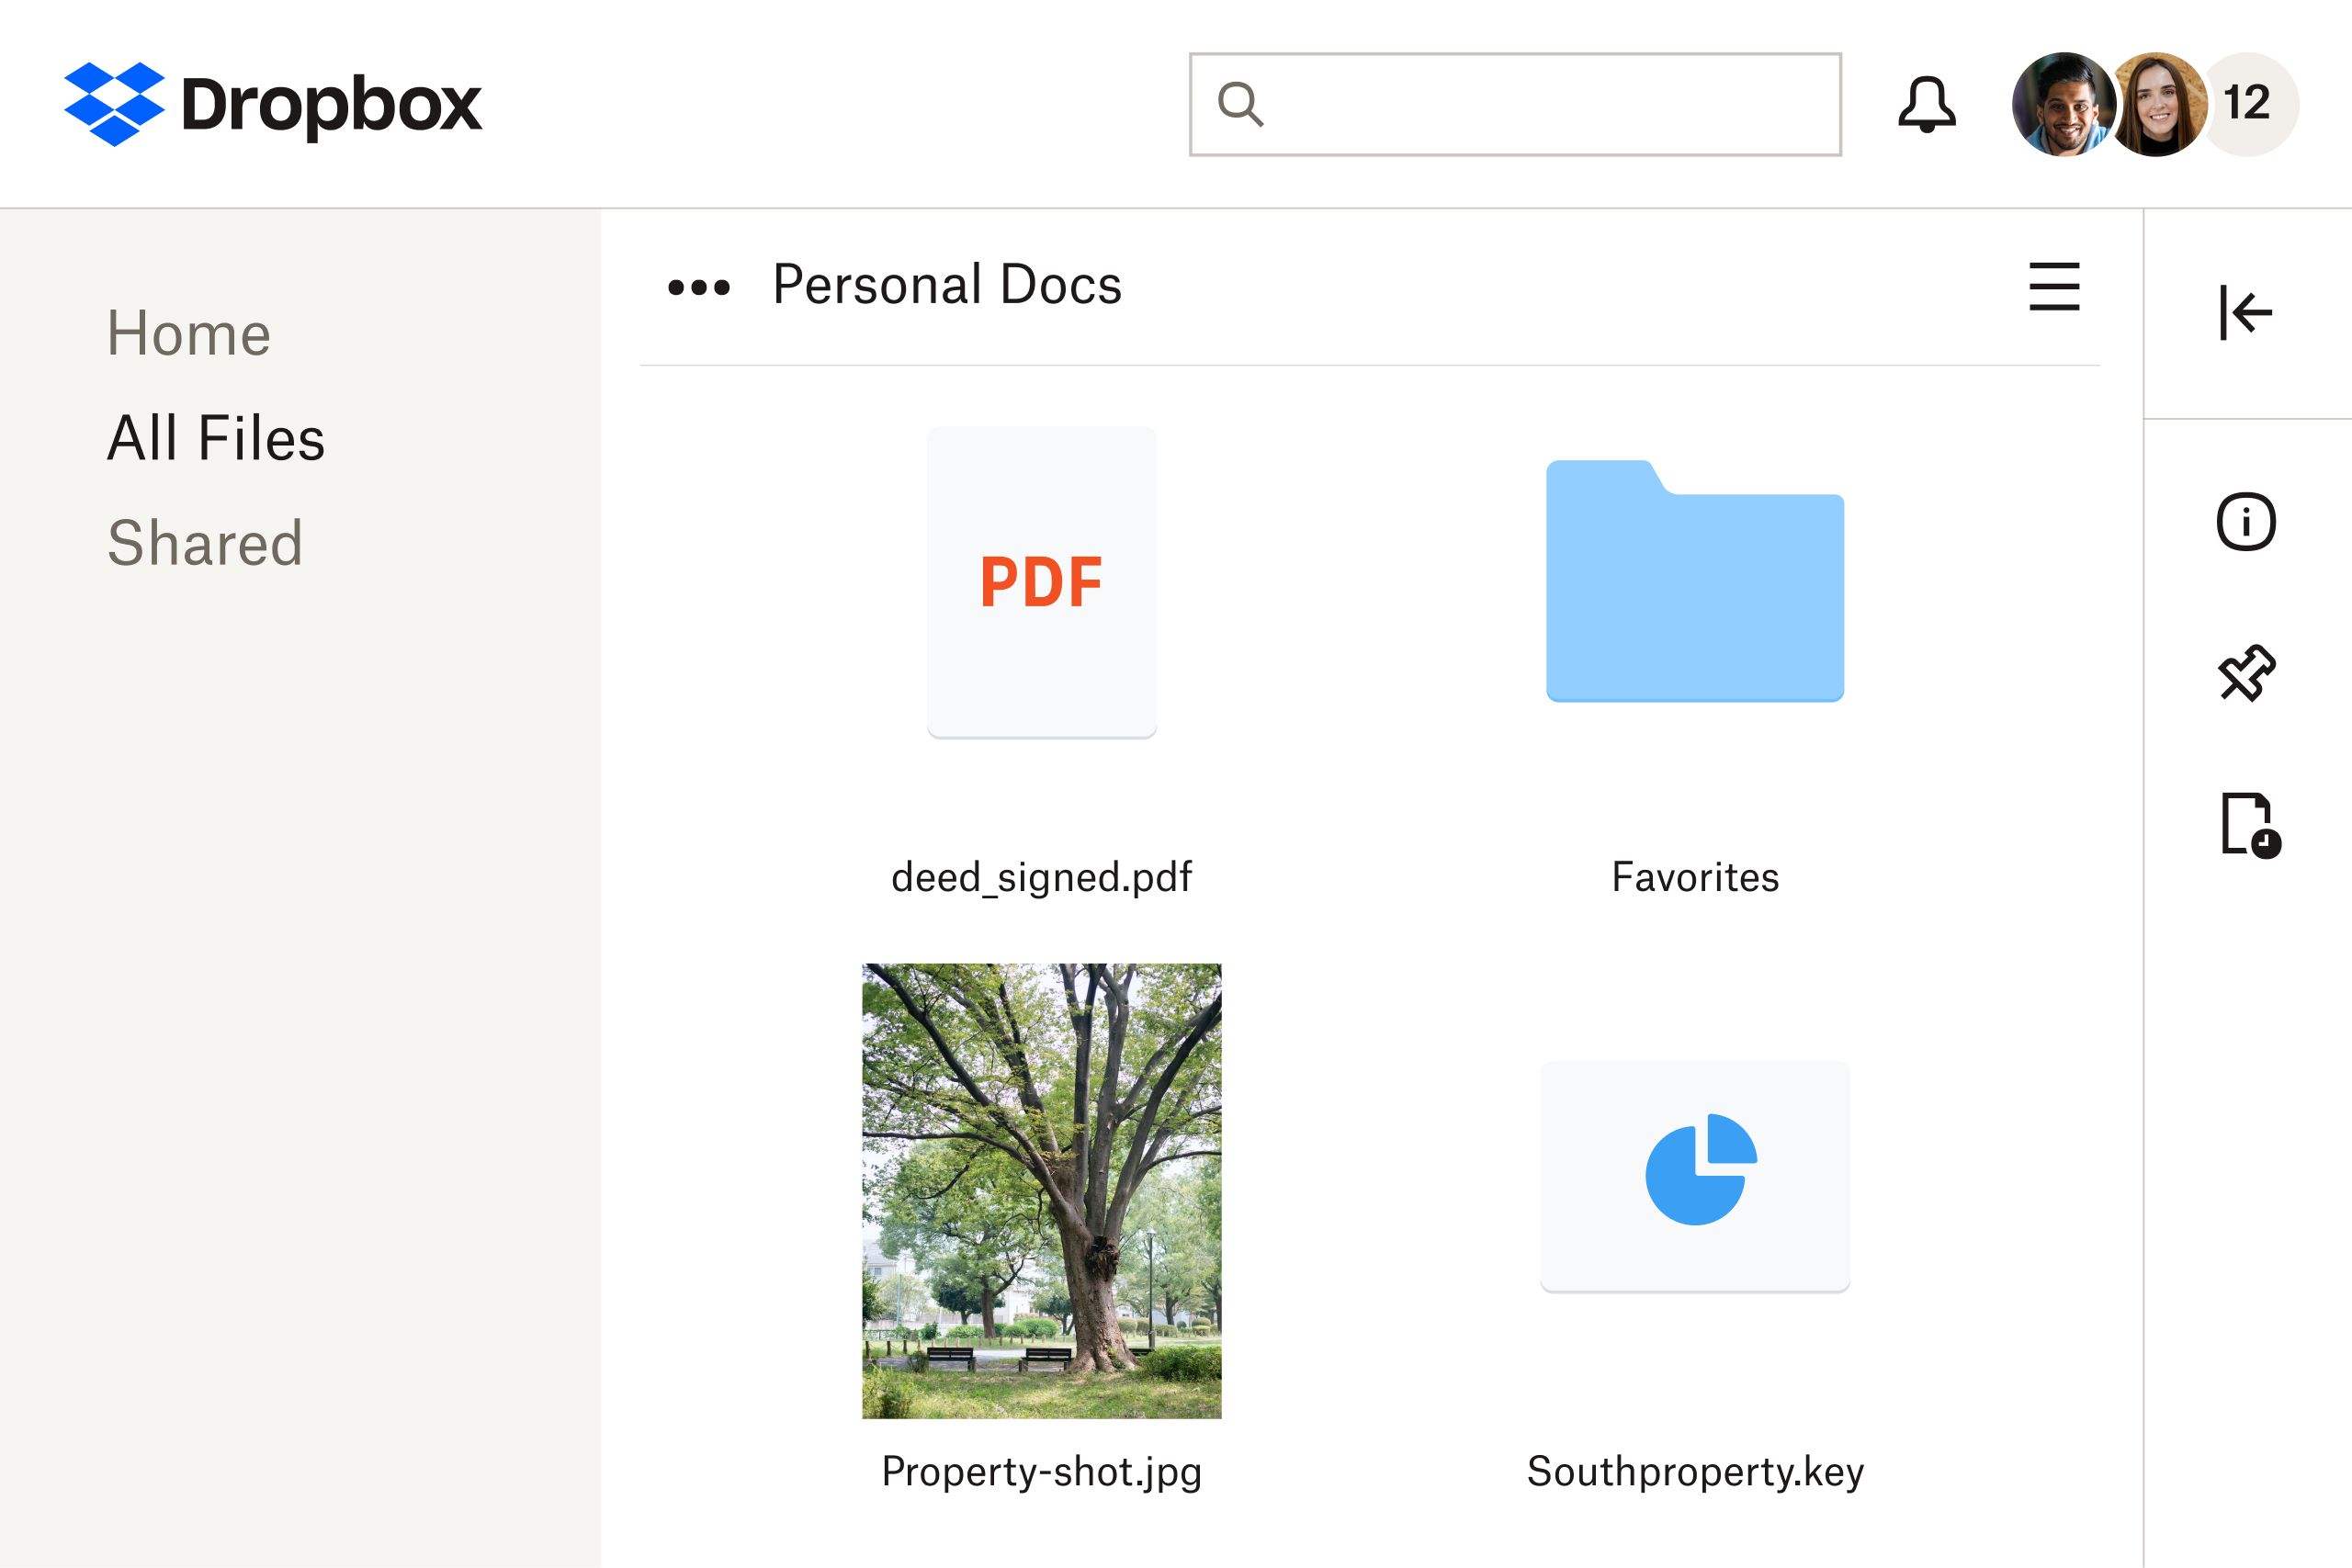 Зображення PDF‑файлу, що зберігається в хмарному сховищі Dropbox, яке можна редагувати за допомогою Dropbox.